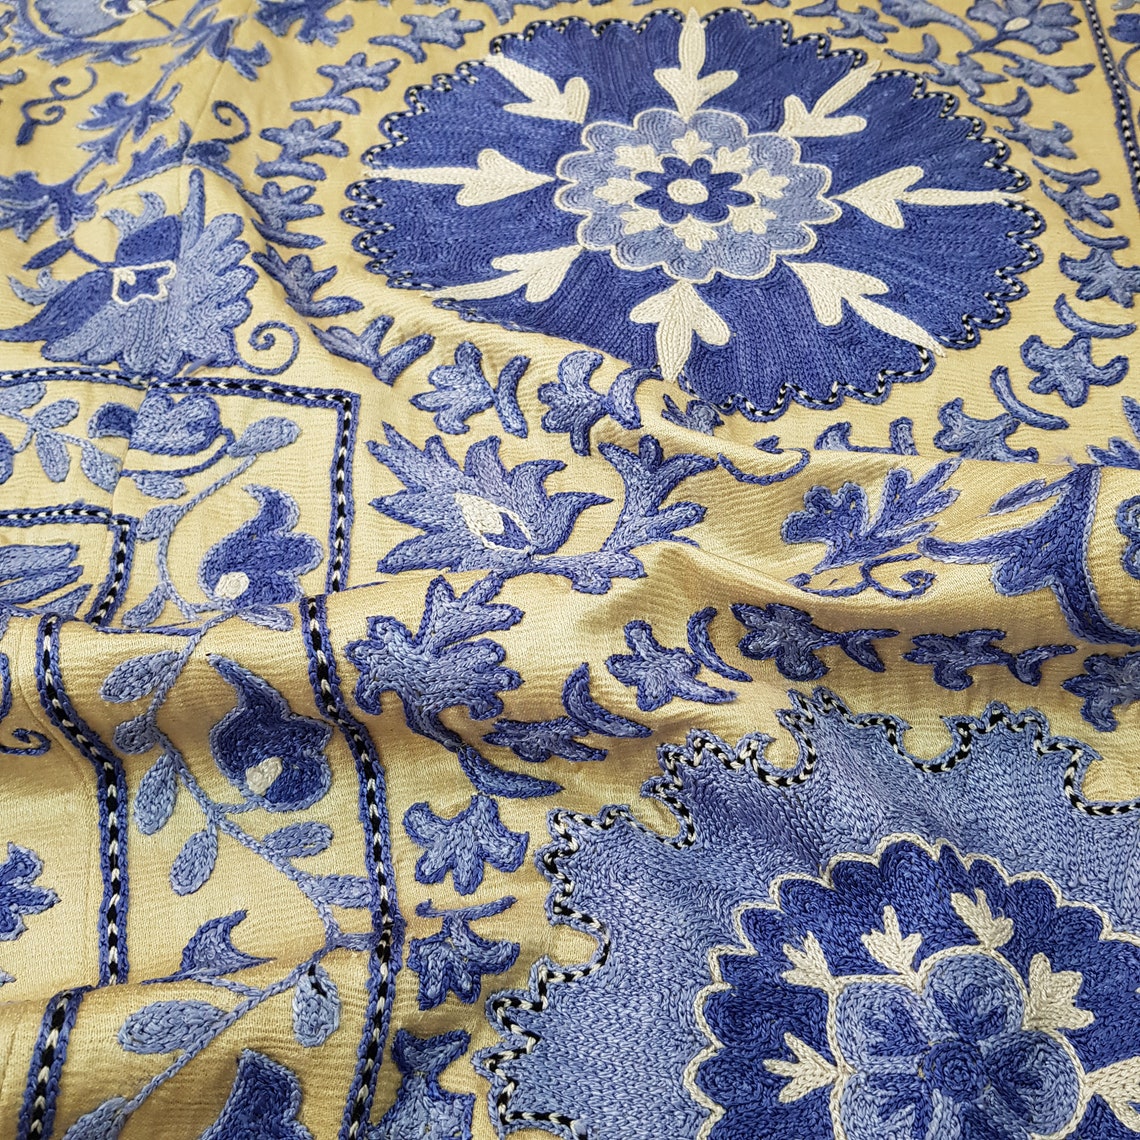 Silk blue suzani fabricsuzani wall hangingembroidered suzani | Etsy